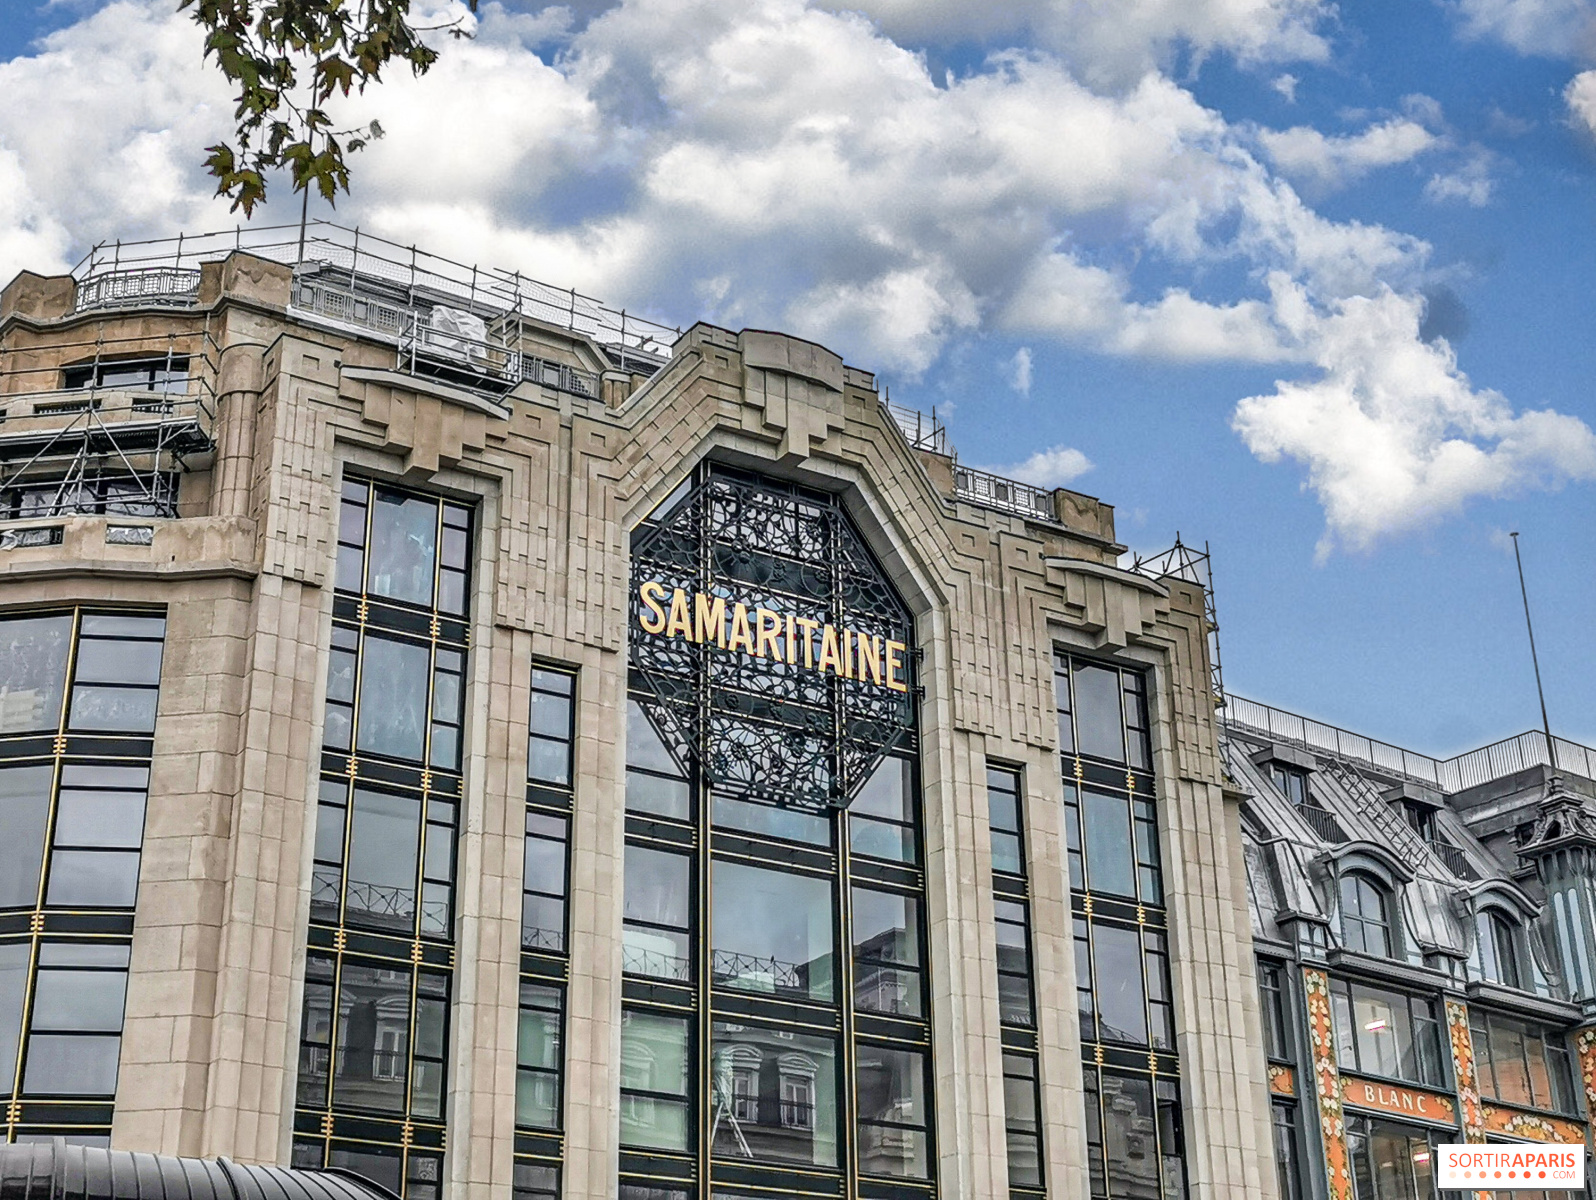 La Samaritaine, Paris Art Nouveau Department Store